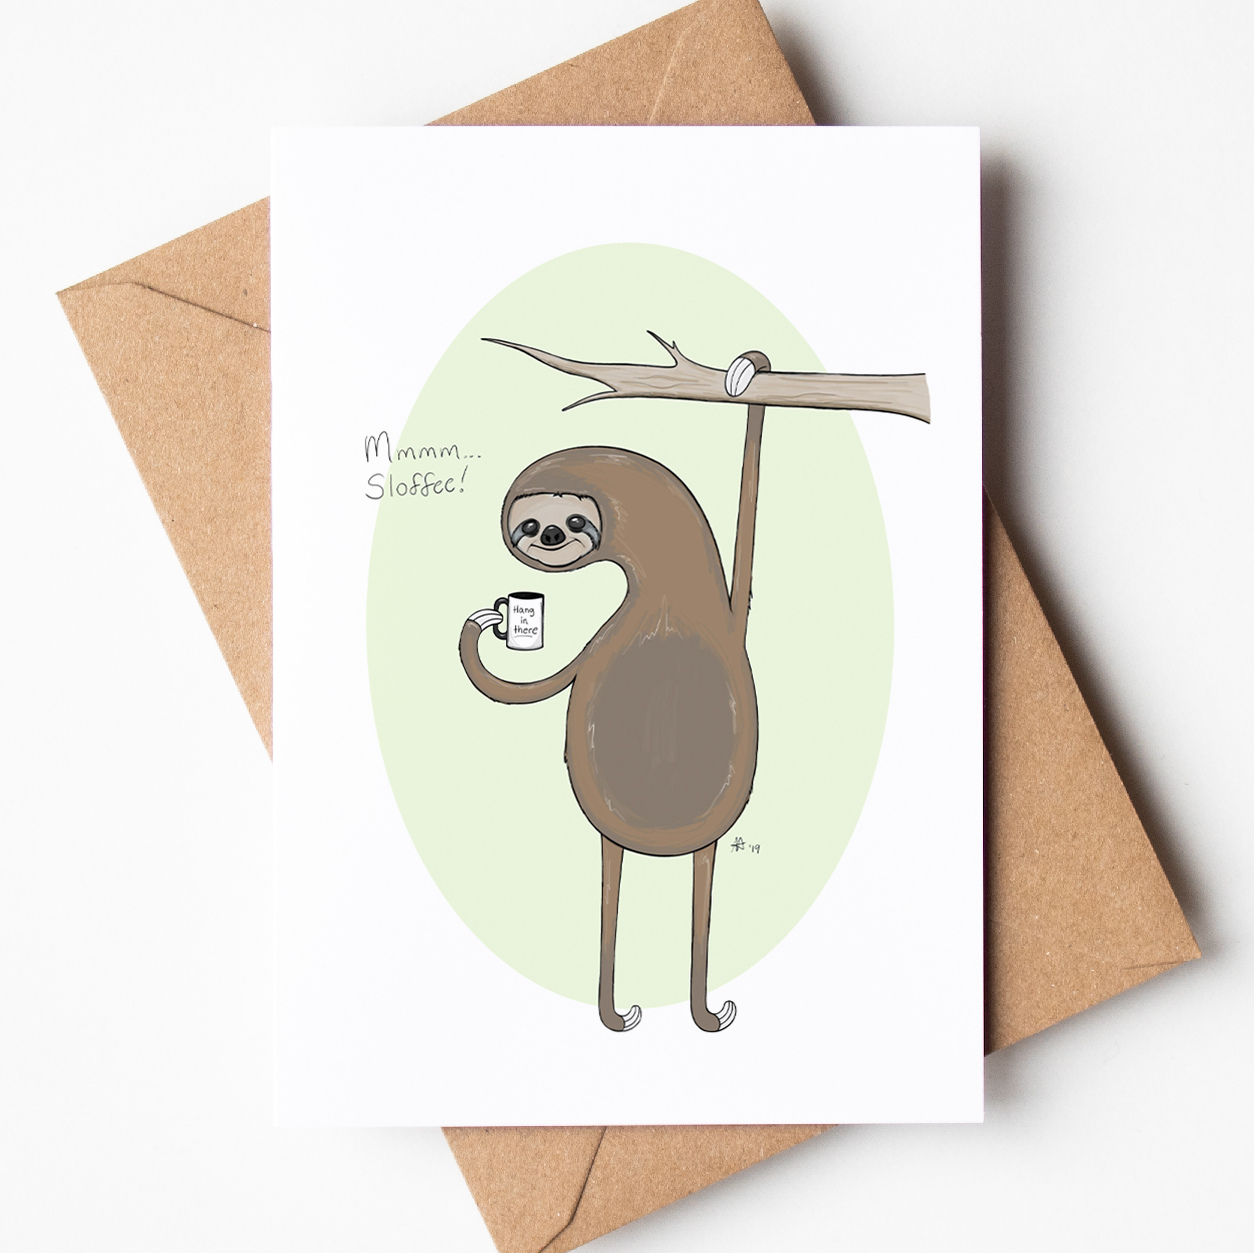 "Mmmm... Sloffee!" - Greeting Card / Small Print